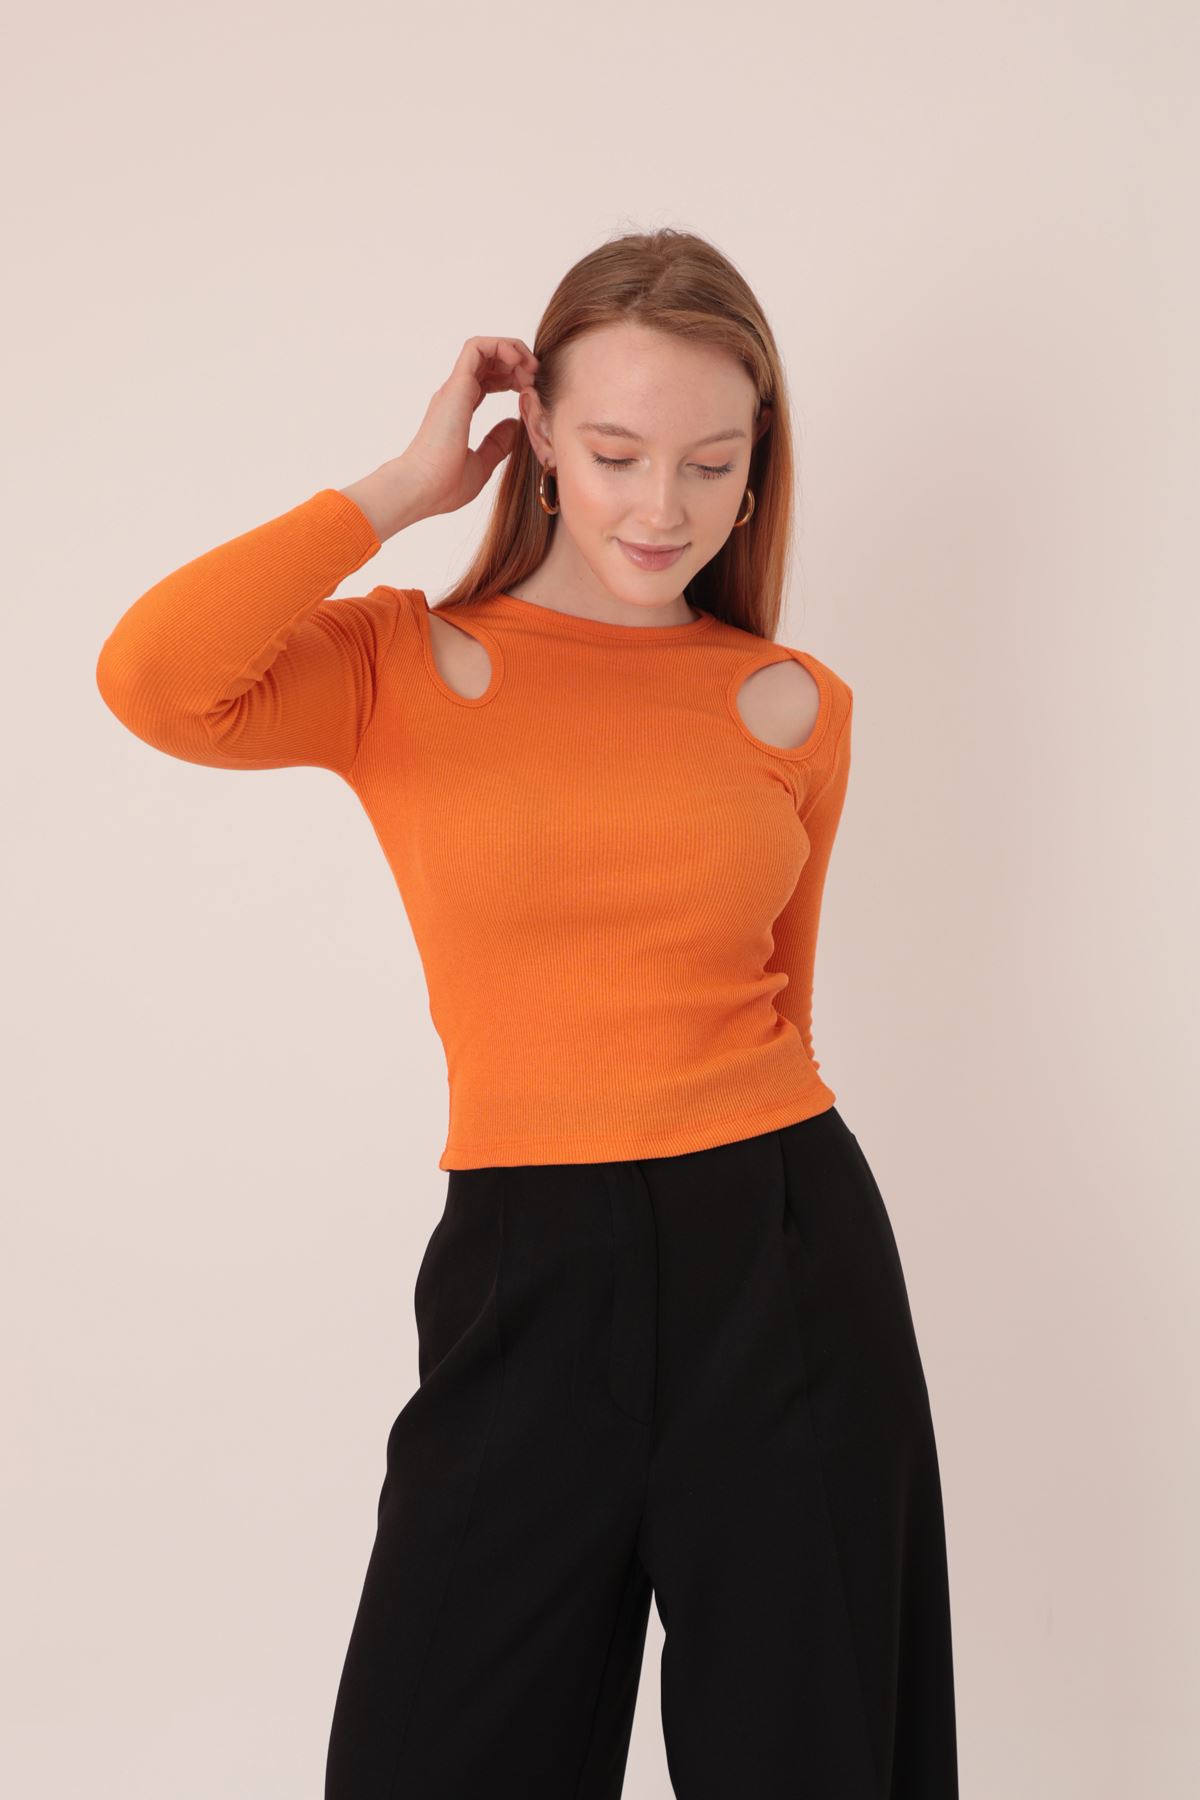 Camisole Ткань Плечо Декольте Женская Блузка-Оранжевый